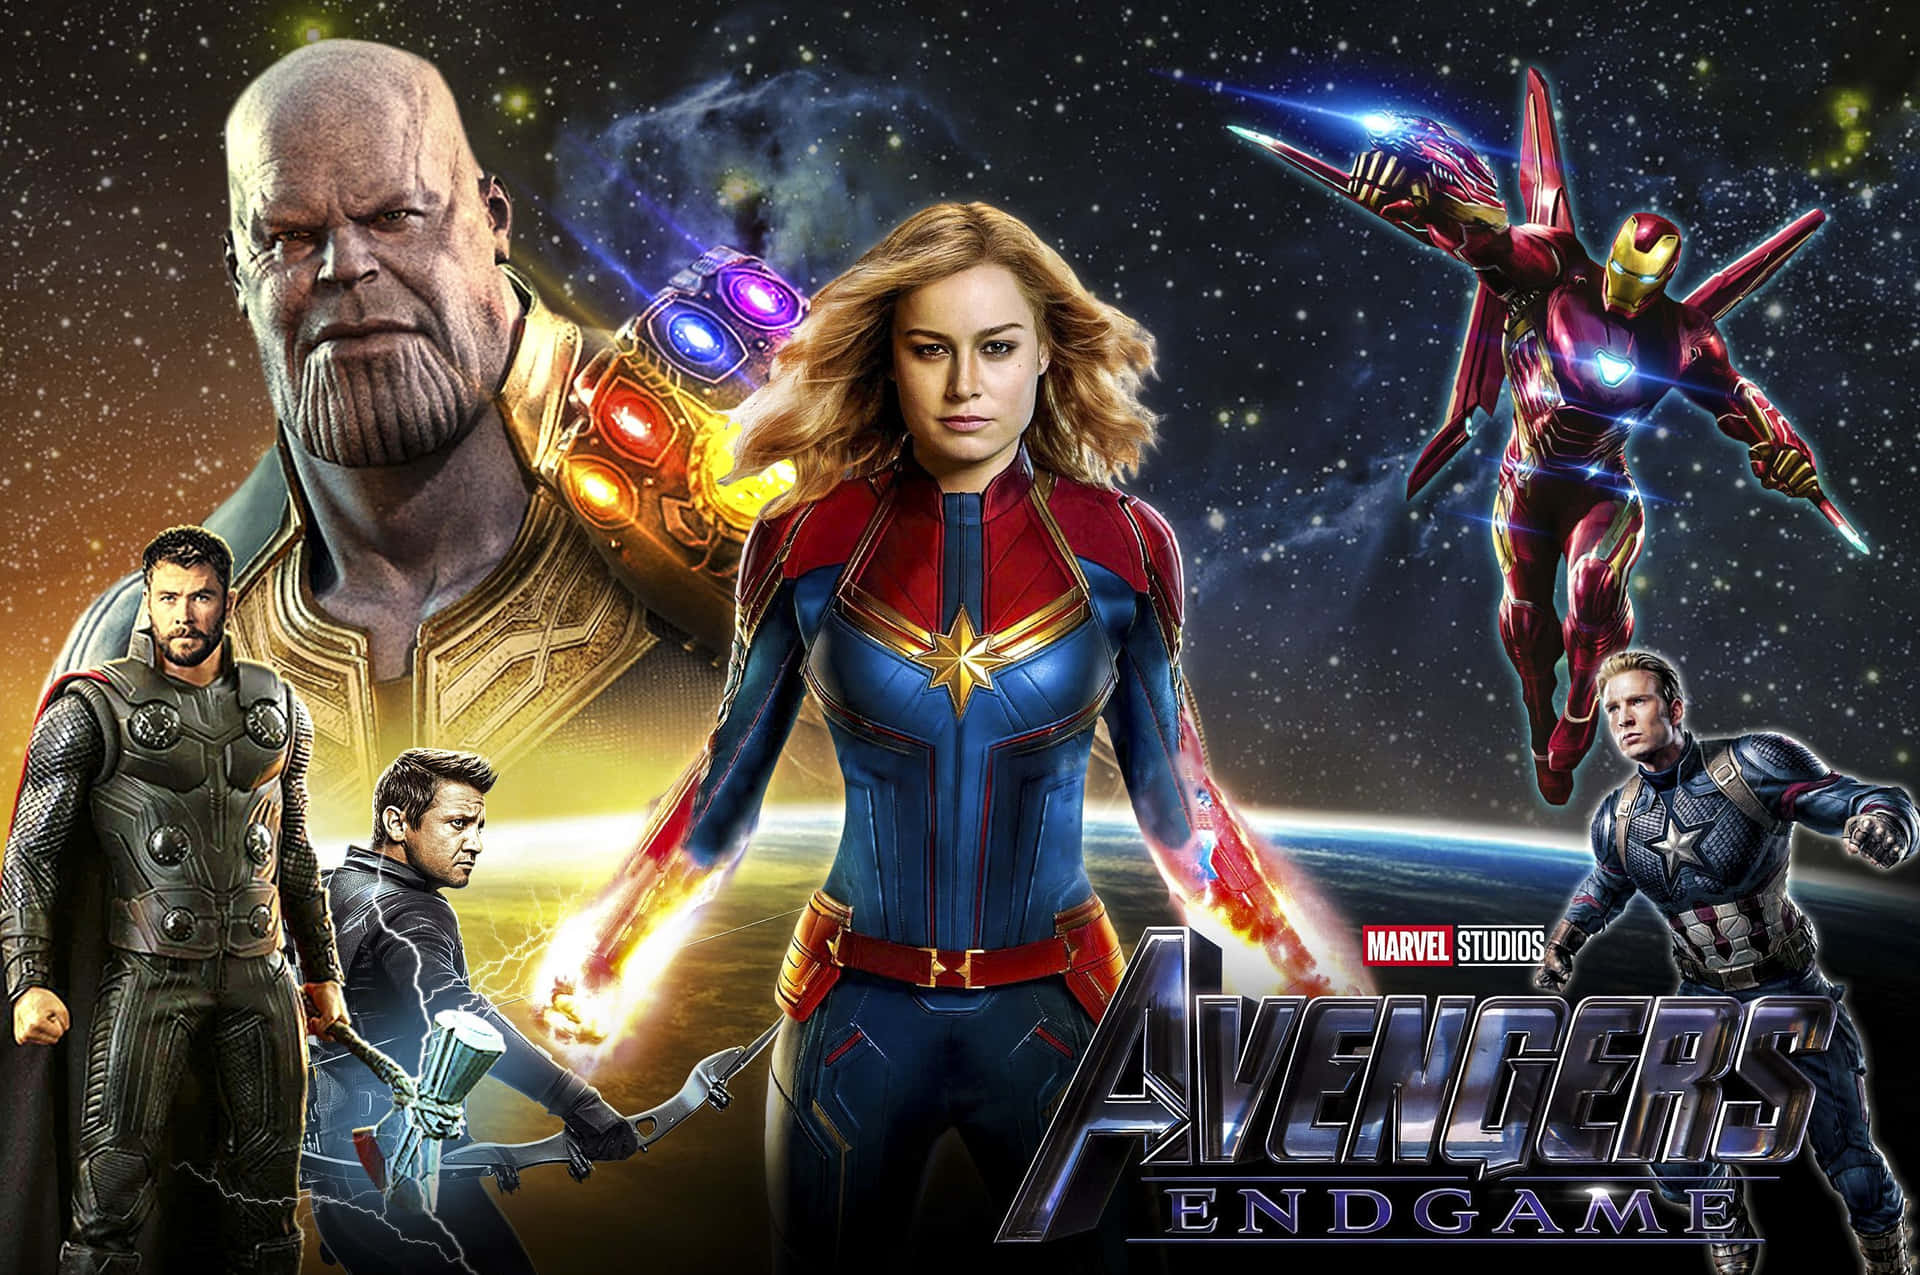 Marvel Avengers End Game Poster Ad Wallpaper